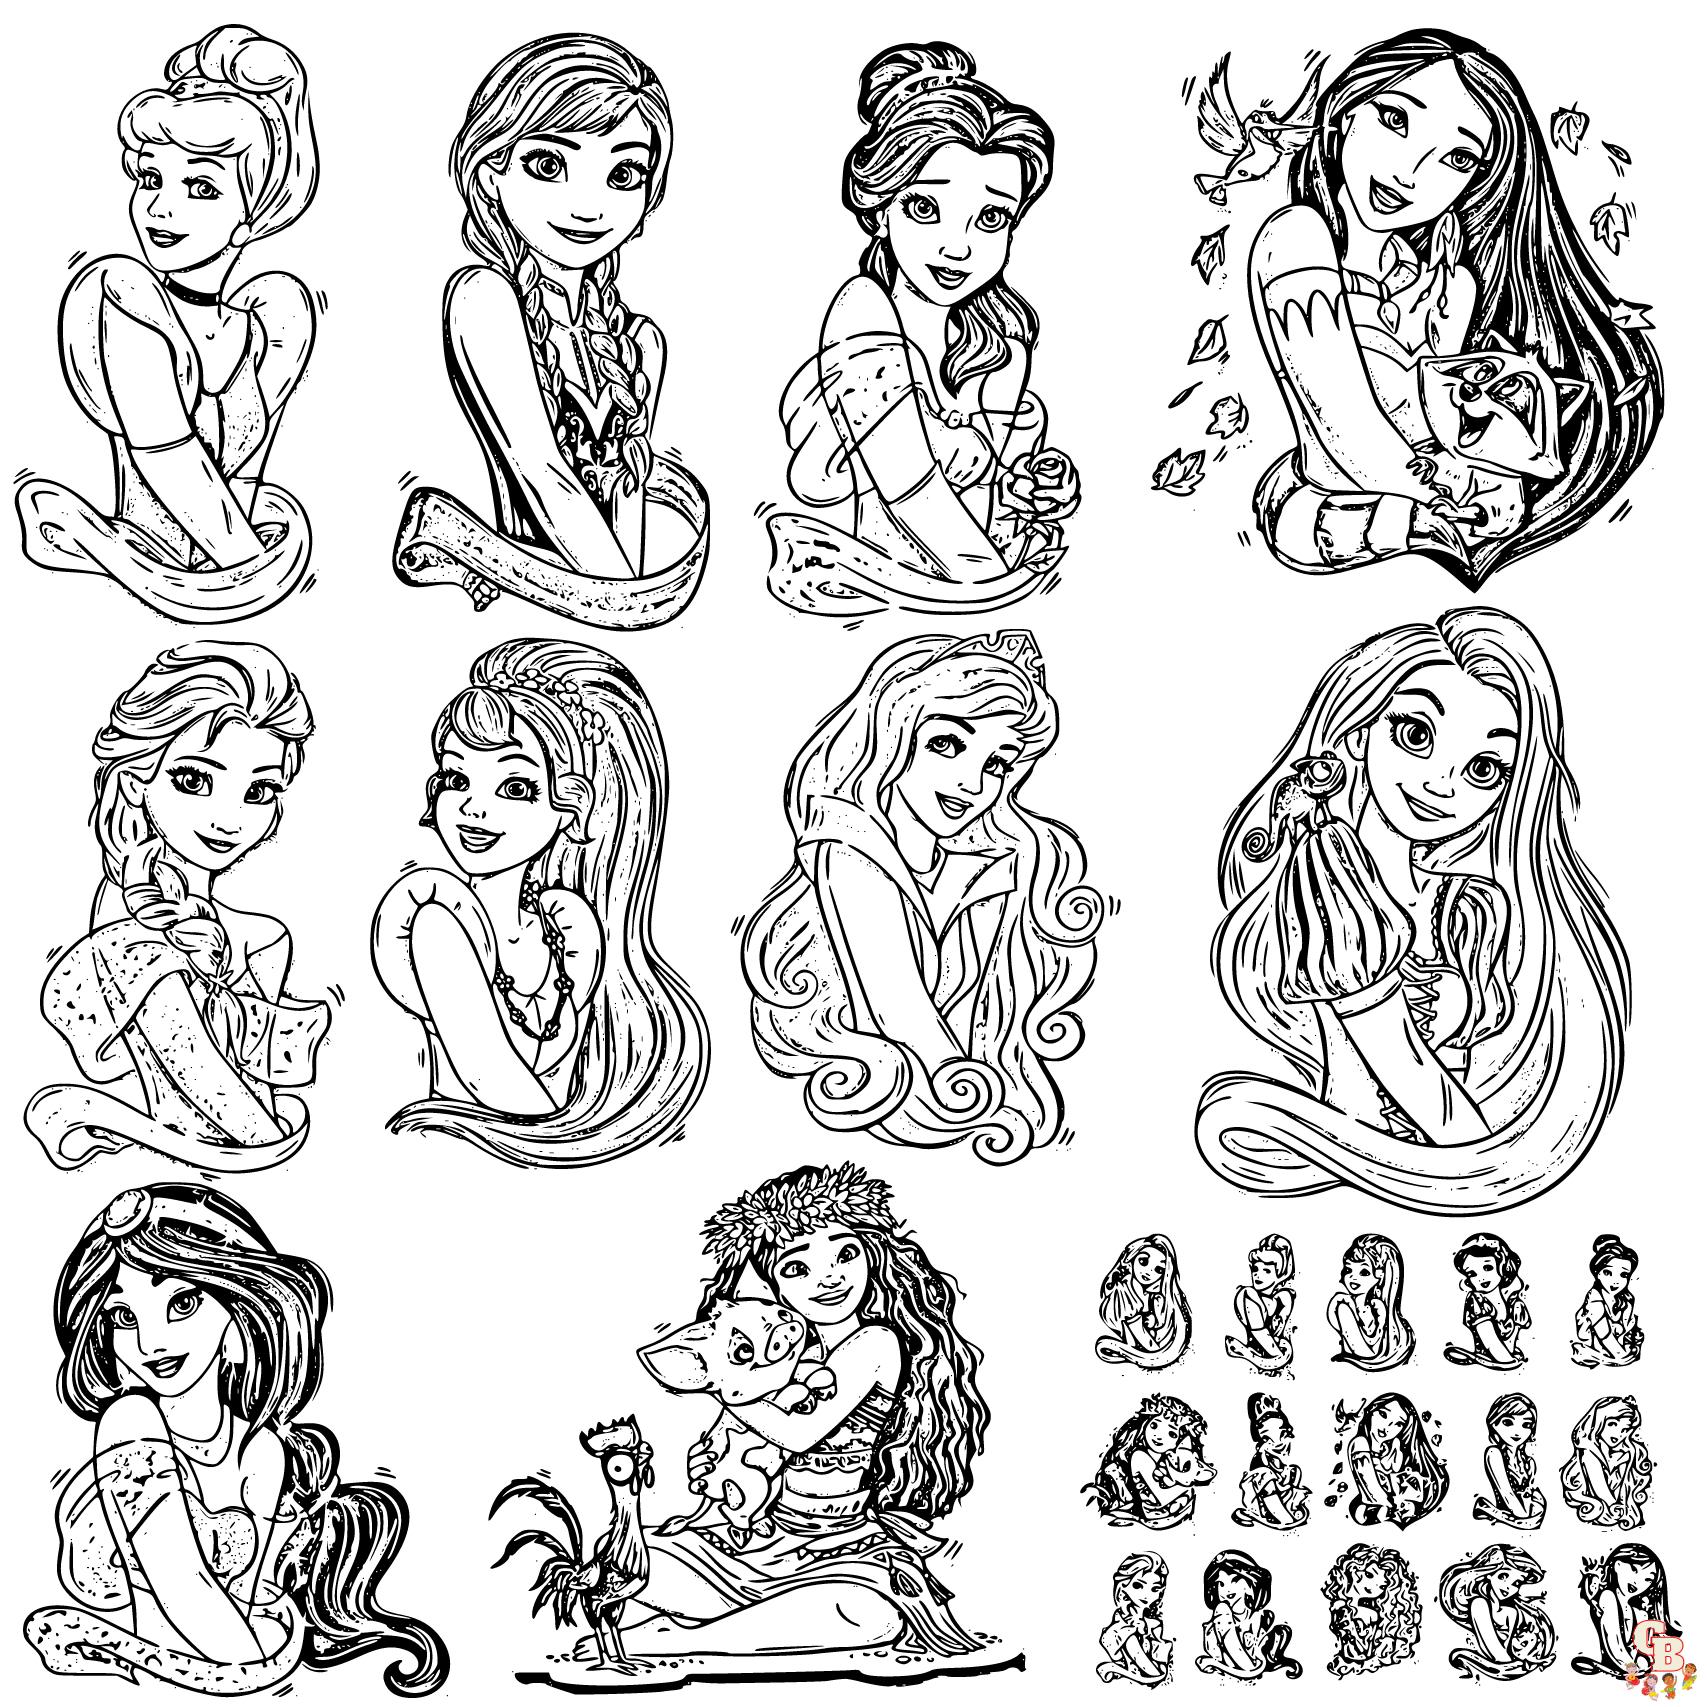 Dibujos de princesas para colorear imprimibles gratis.